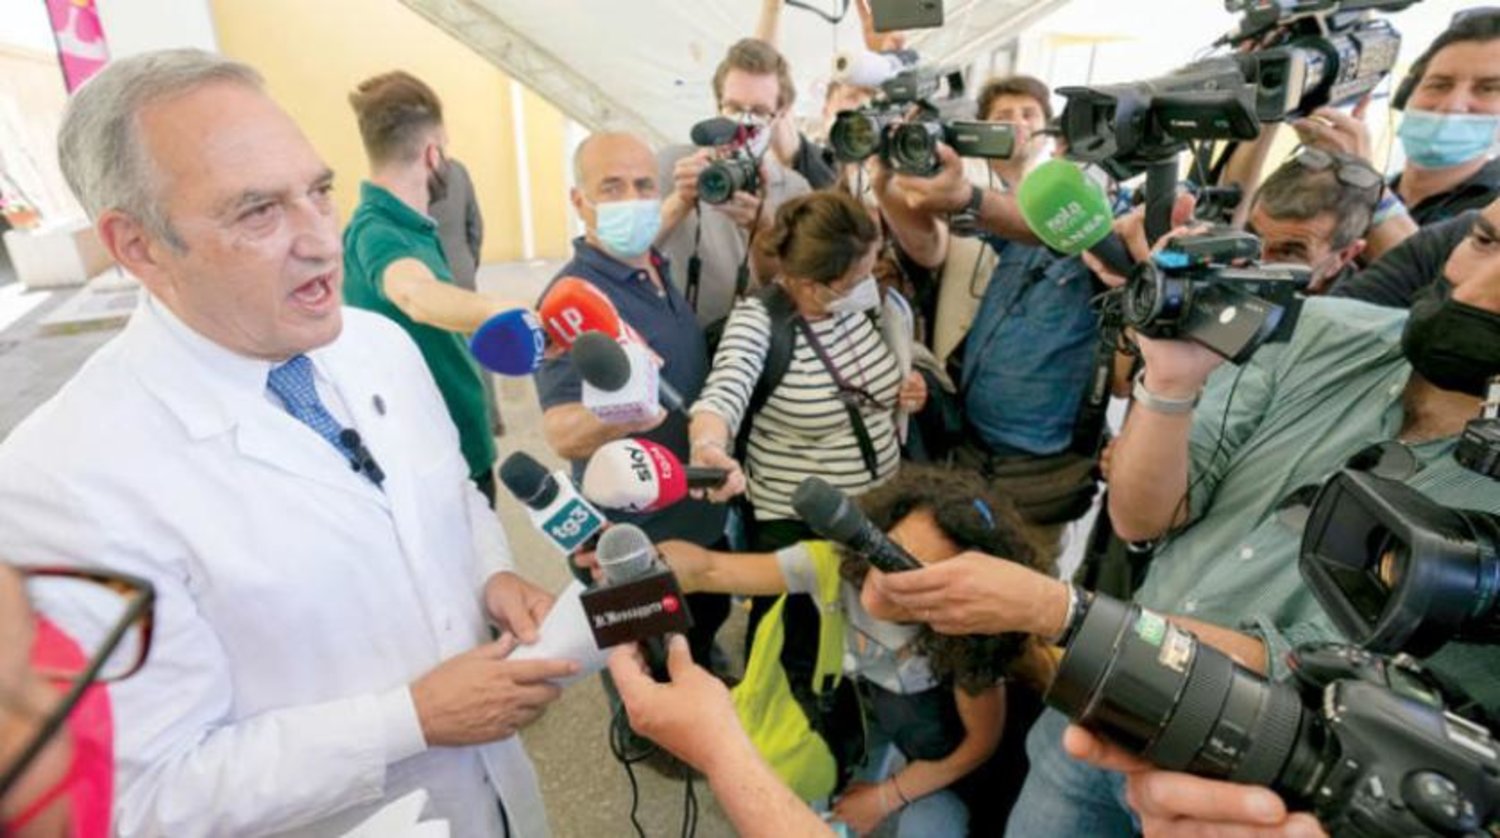 "منکی پوکس" وائرس کے پہلے کیس ریکارڈ ہونے کے بعد روم میں ایک پریس کانفرنس کے منظر کو دیکھا جا سکتا ہے (اے بی)